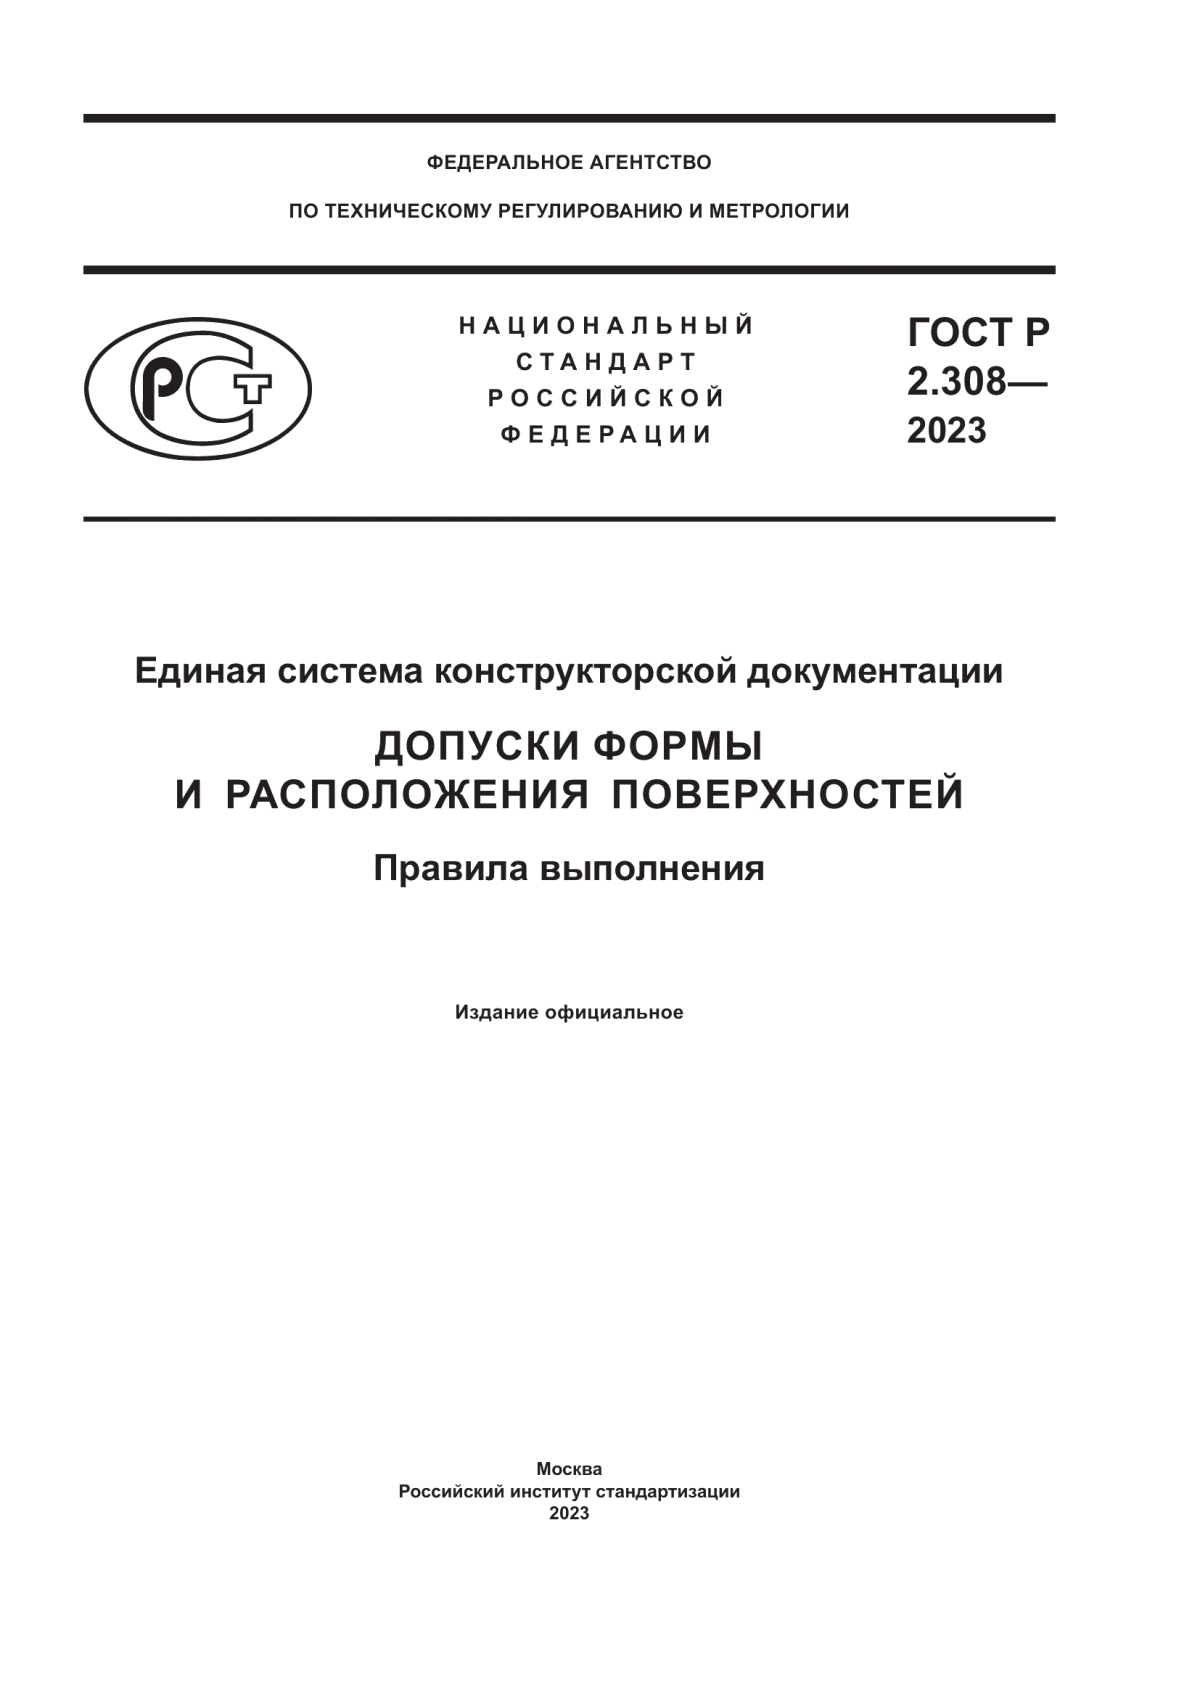 ГОСТ Р 2.308-2023 Единая система конструкторской документации. Допуски формы и расположения поверхностей. Правила выполнения